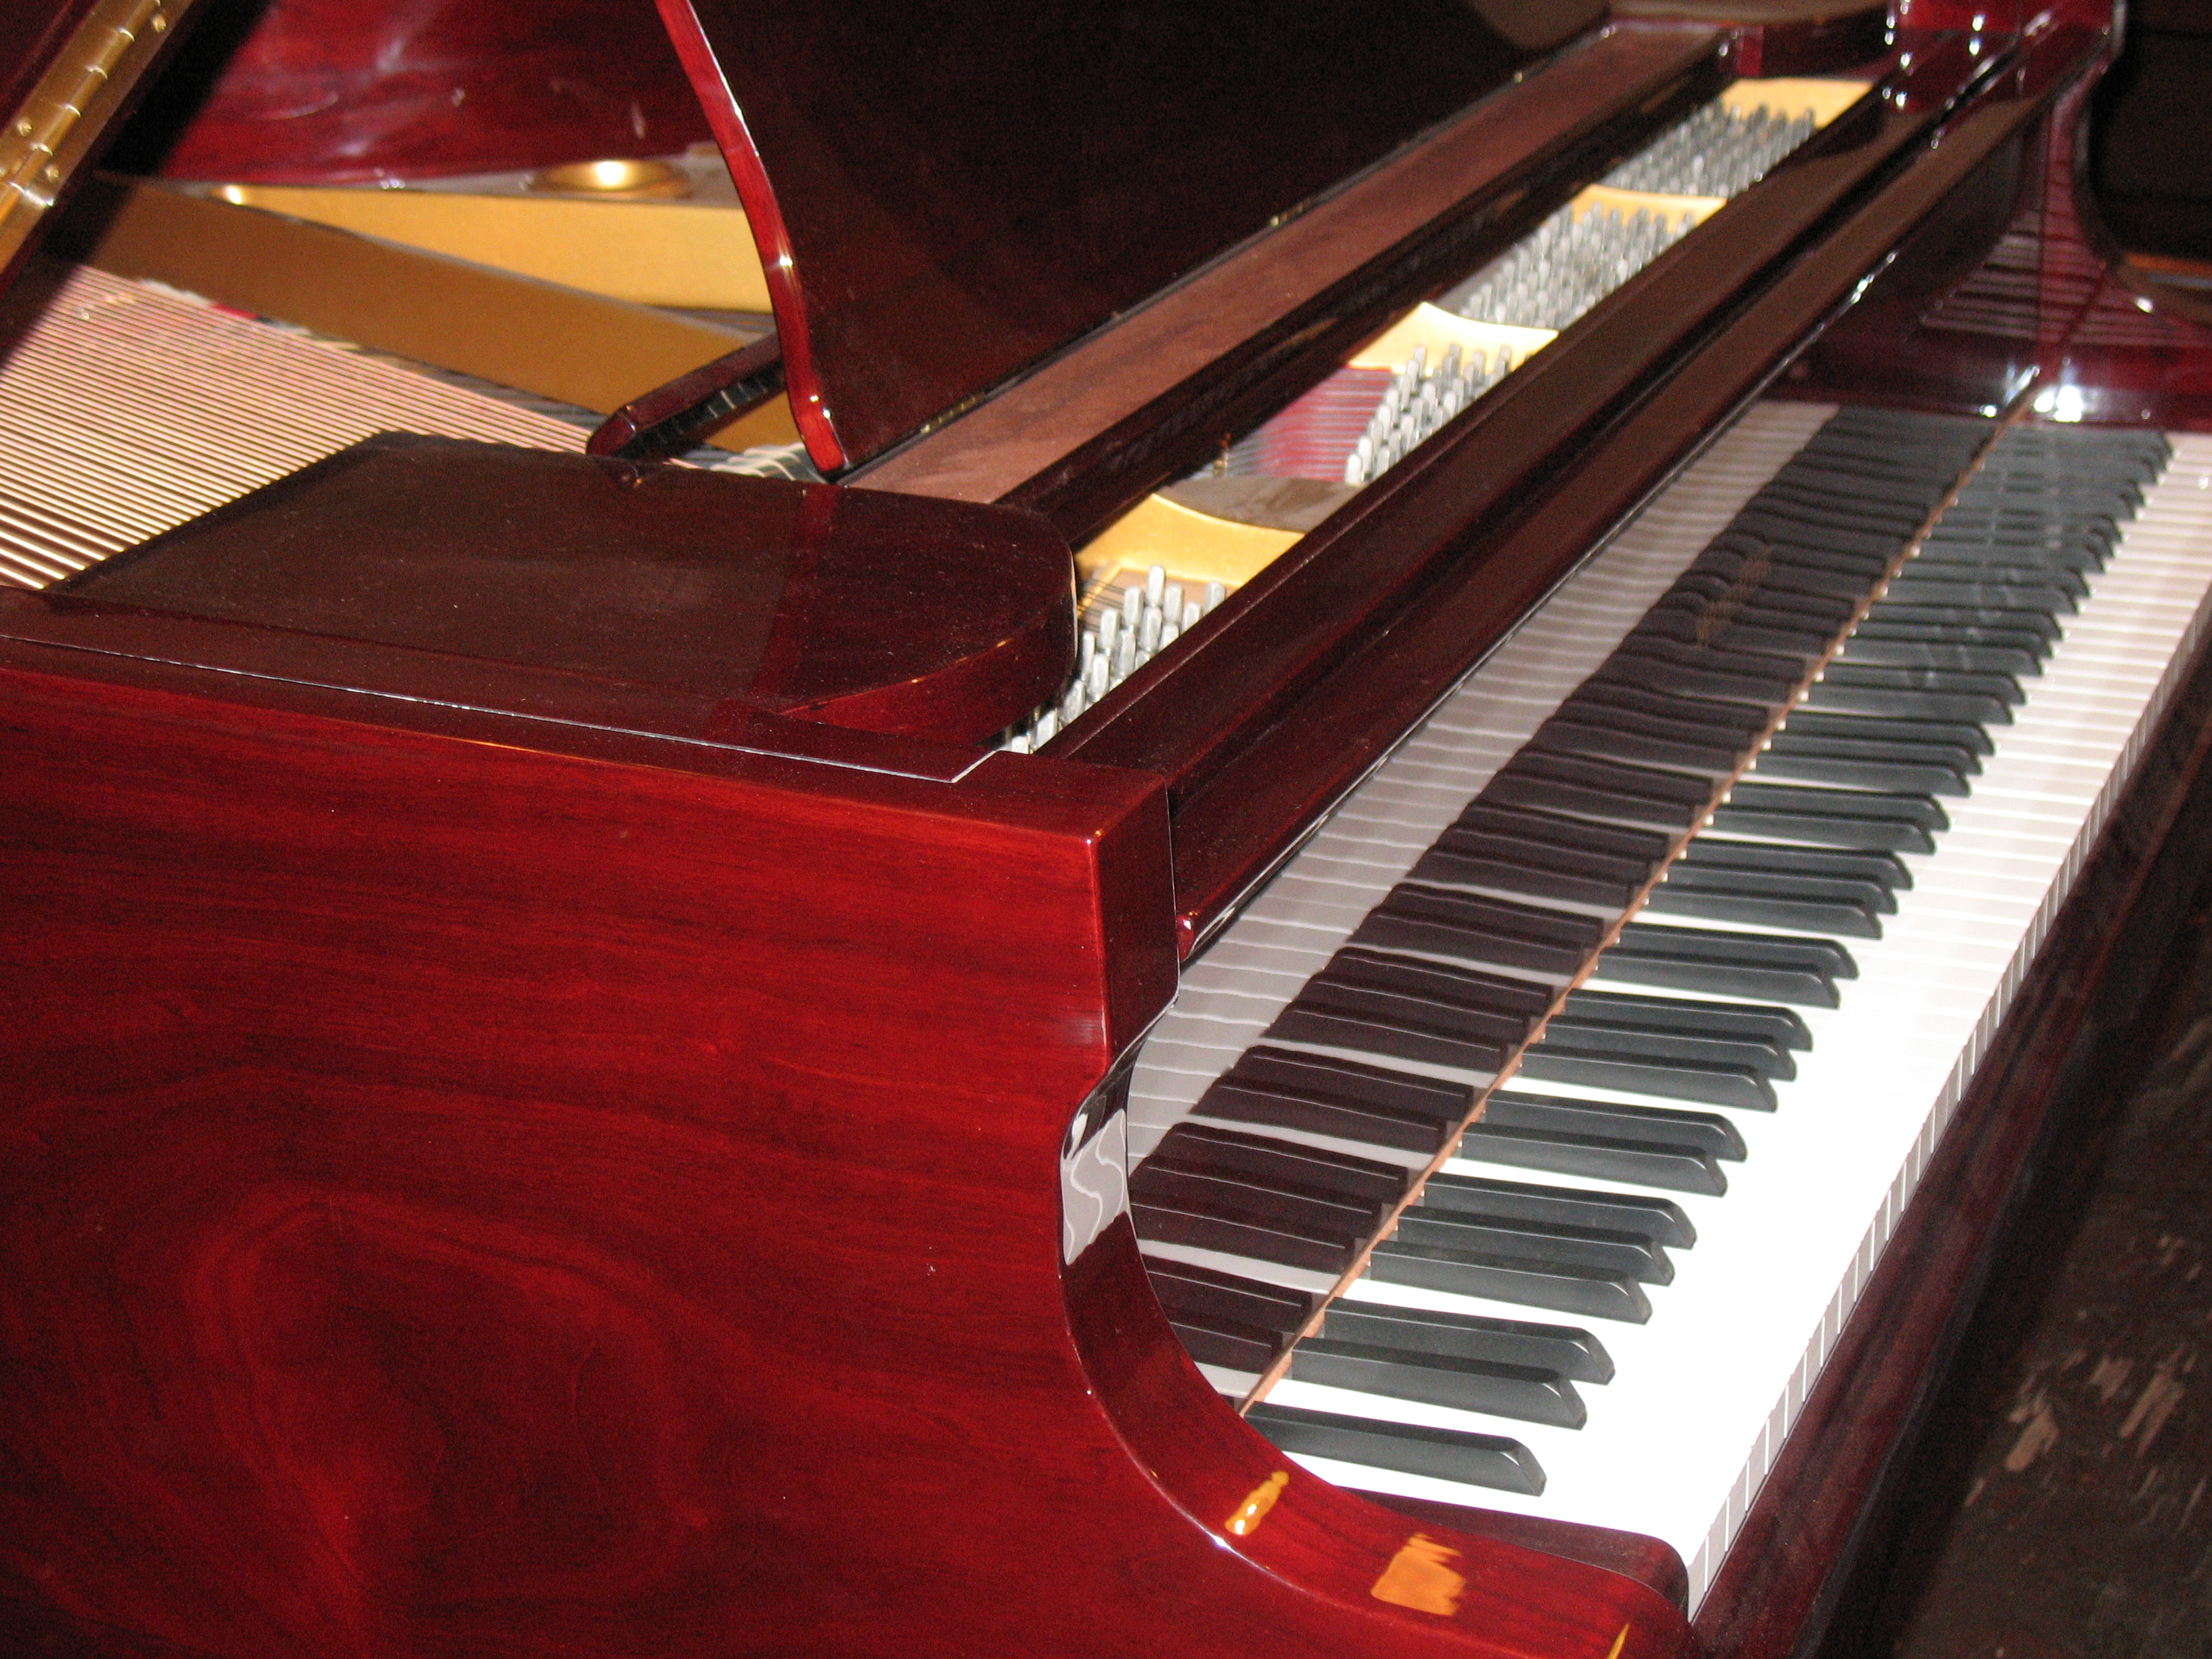 Piano and Keyboard Rentals